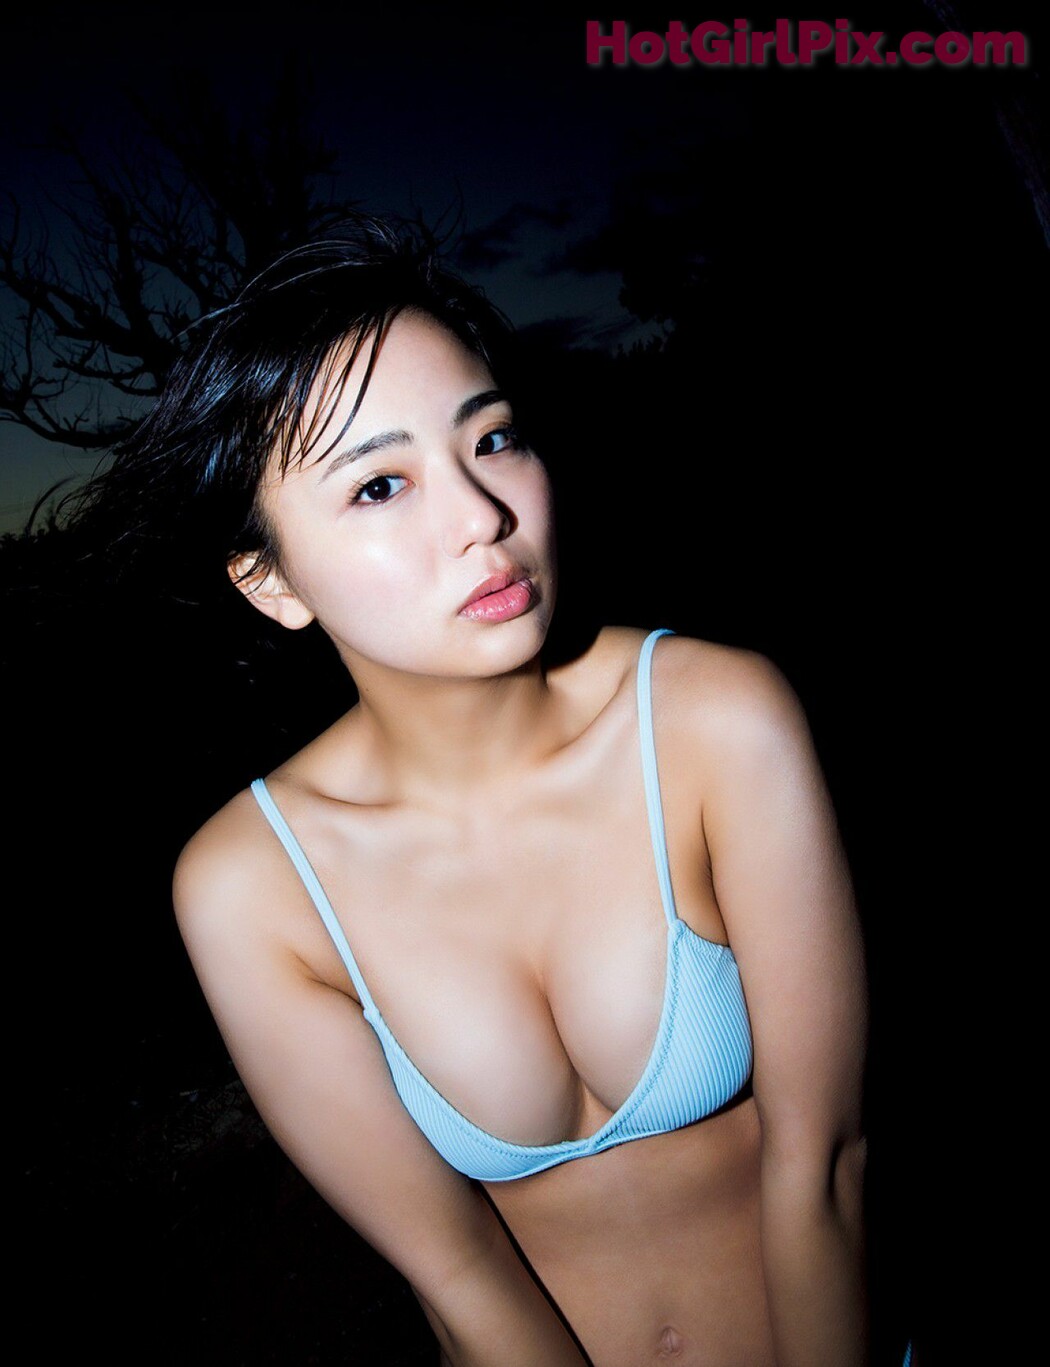 [FRIDAY] Hirashima Natsumi - "Naked body を超えて" オール undisclosed kit!